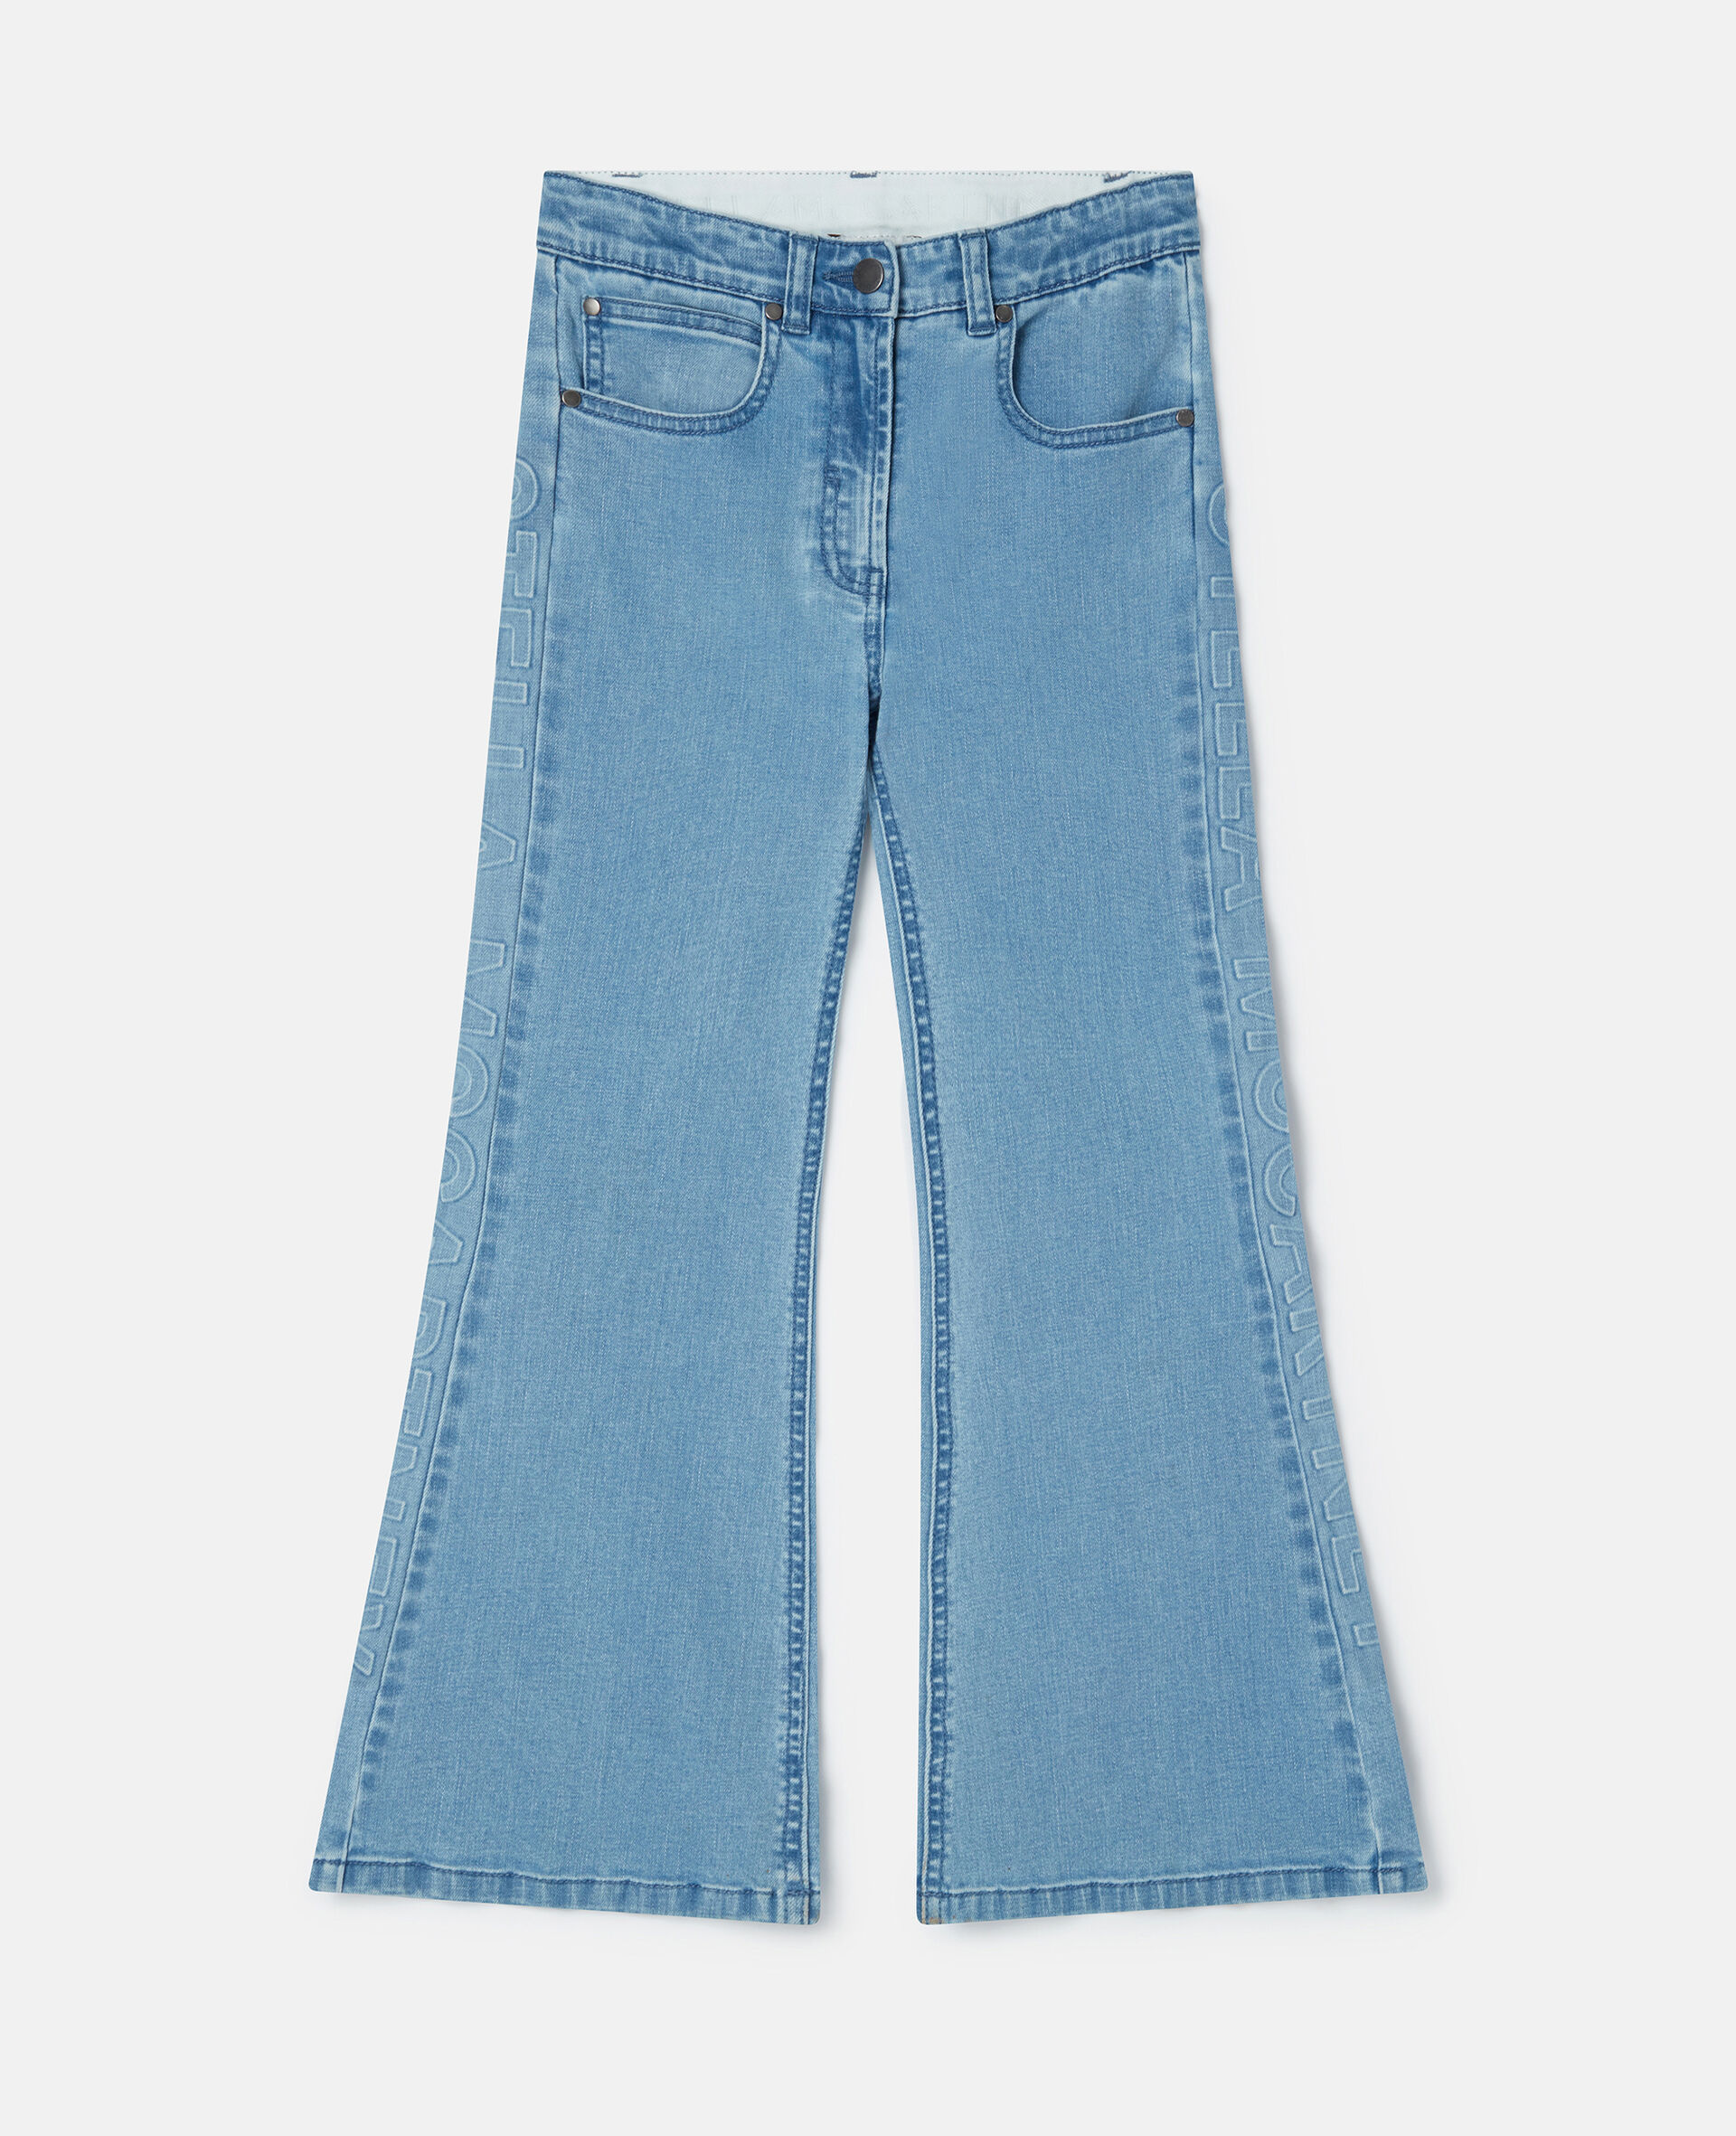 Flared Jeans-Blue-large image number 0